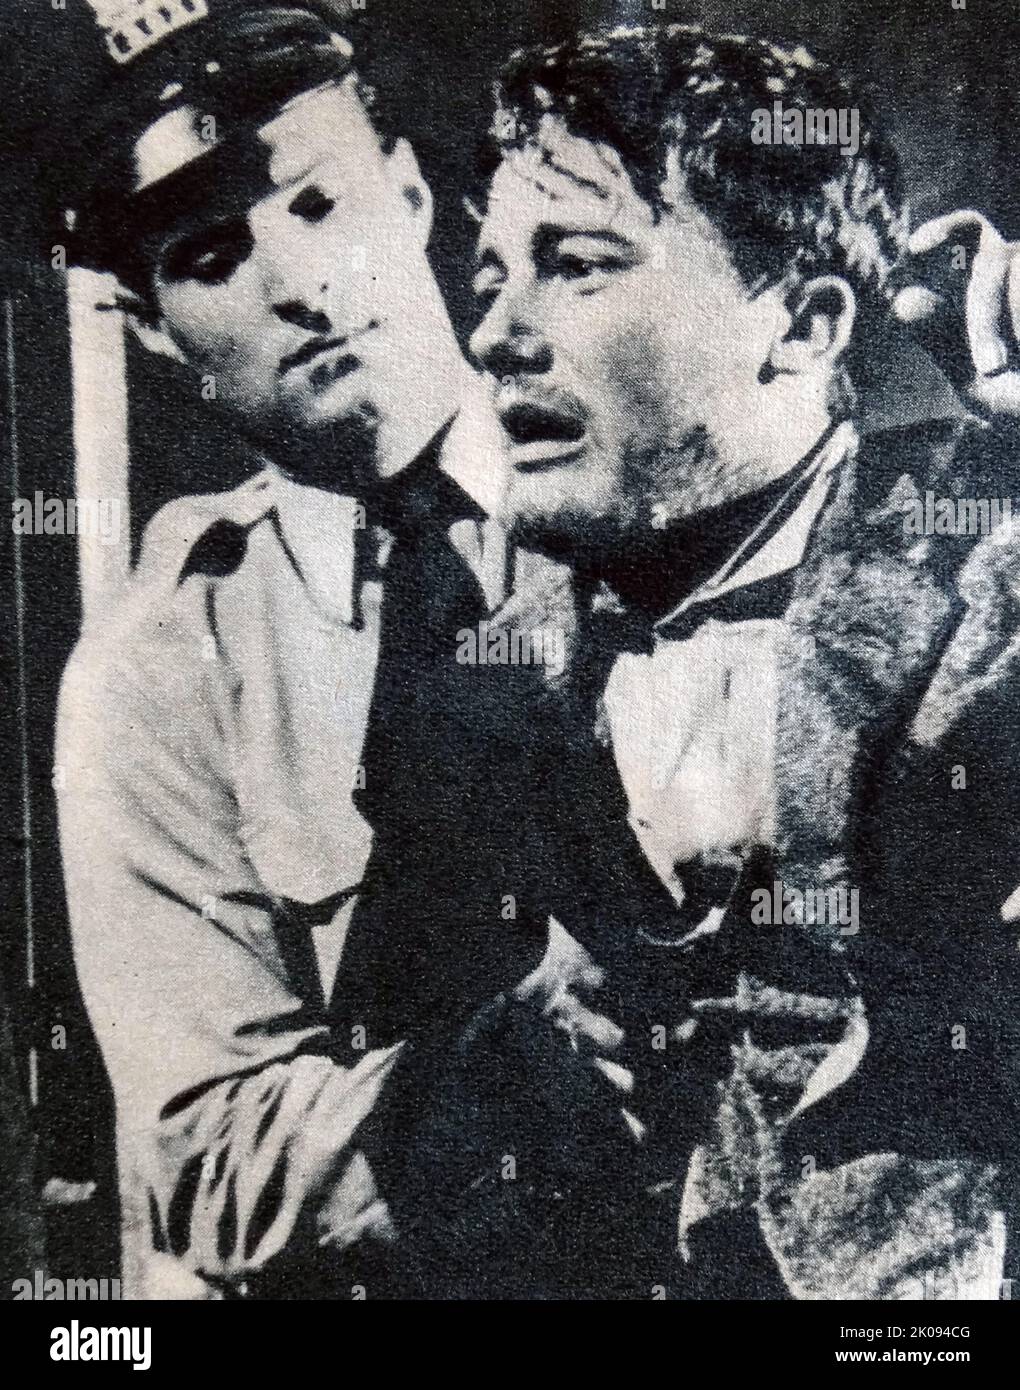 Zeitungsbericht zum Film City in the Jungle von 1959 mit Robert Vaughn. Robert Francis Vaughn (22. November 1932 - 11. November 2016) war ein amerikanischer Schauspieler, der für seine Bühnen-, Film- und Fernseharbeiten bekannt war. Stockfoto